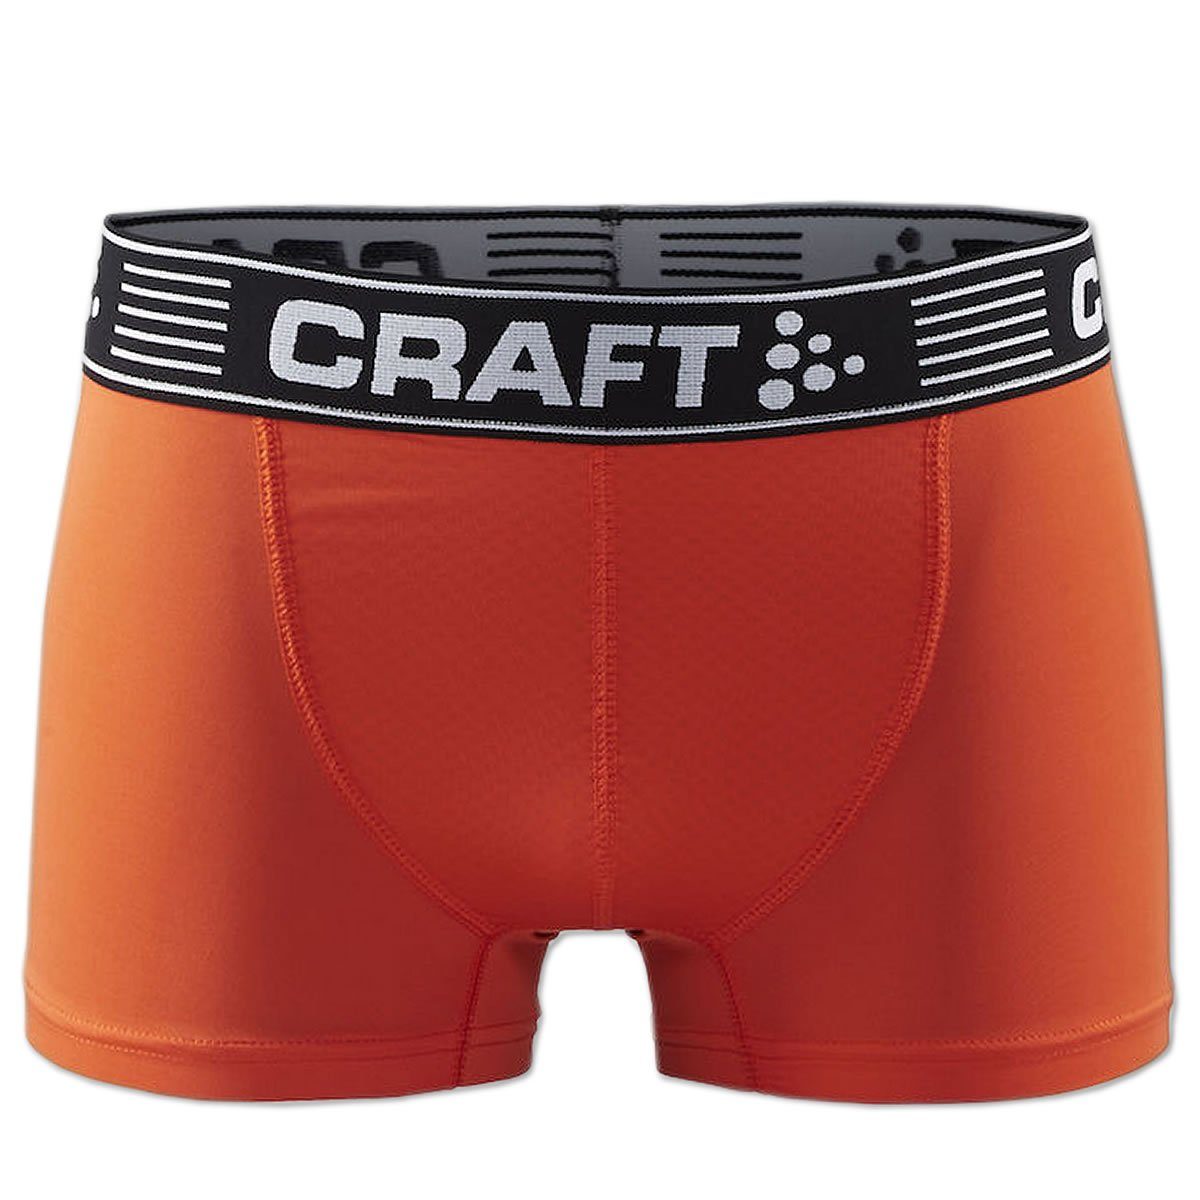 Craft Funktionsunterhose Greatness Boxer Short Boxershort Webbund, Sportunterhose und orange bequem Logo weich mit 3-Inch